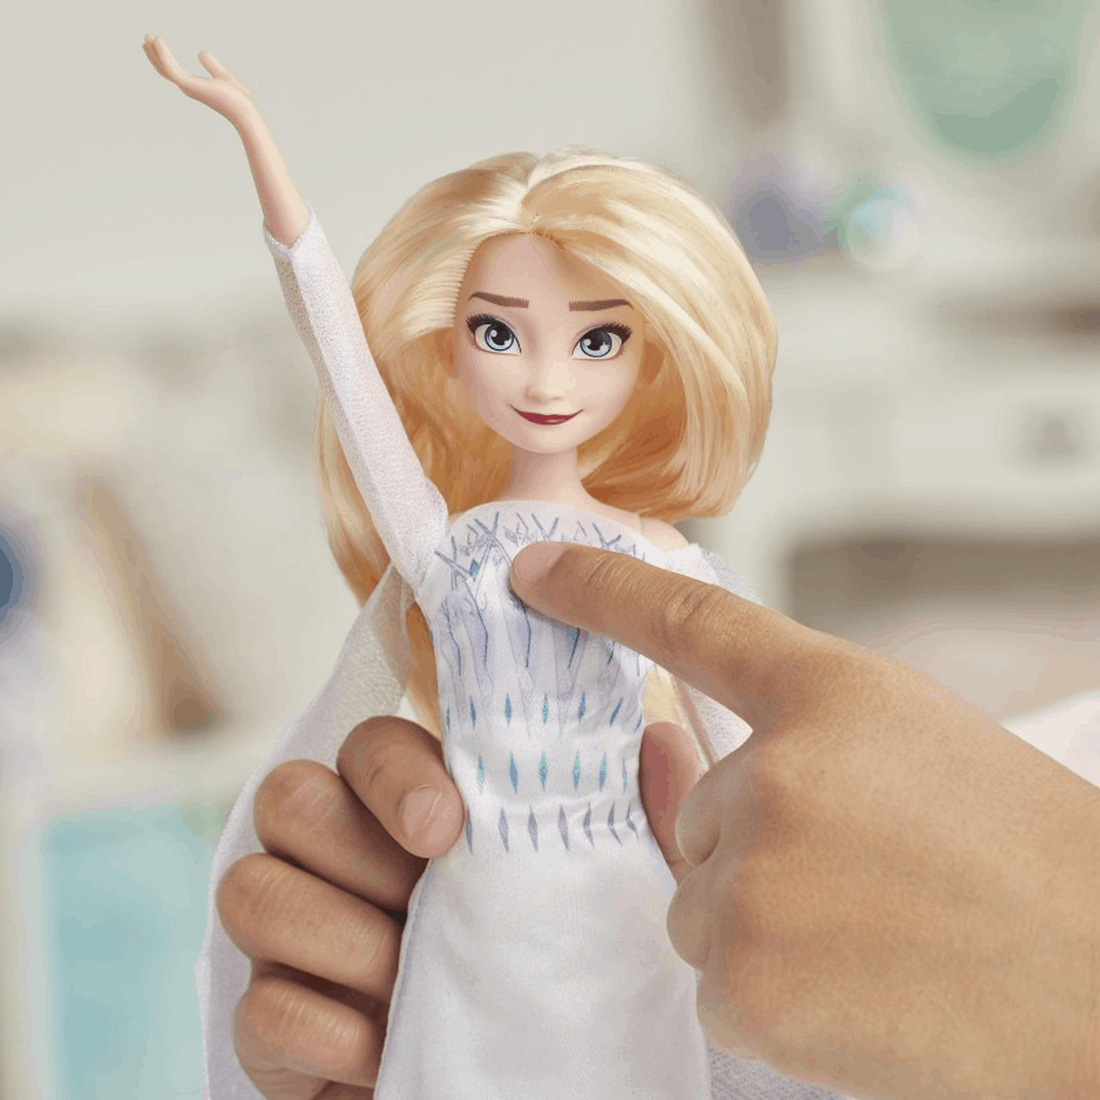 Disney Κούκλα - Frozen II - Elsa Musical Adventure